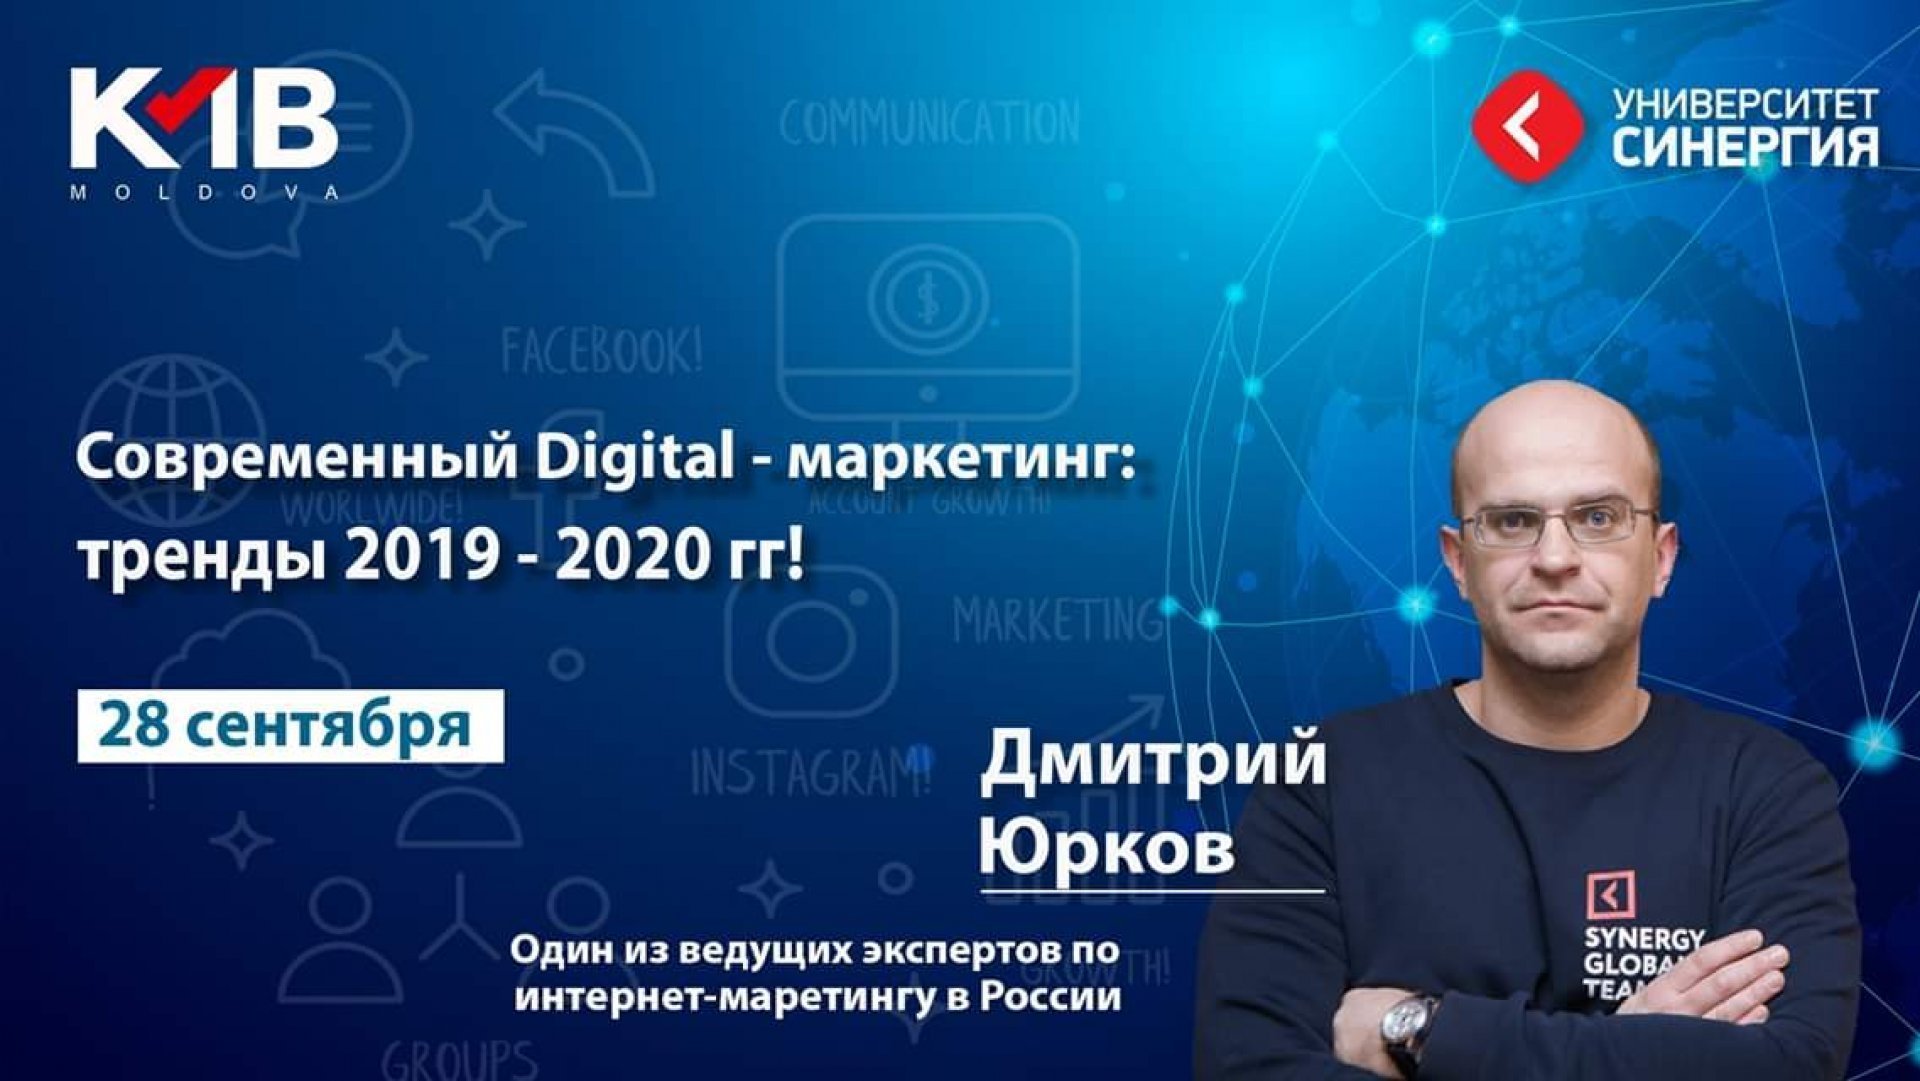 Современный Digital - маркетинг: Тренды 2019 - 2020 гг.